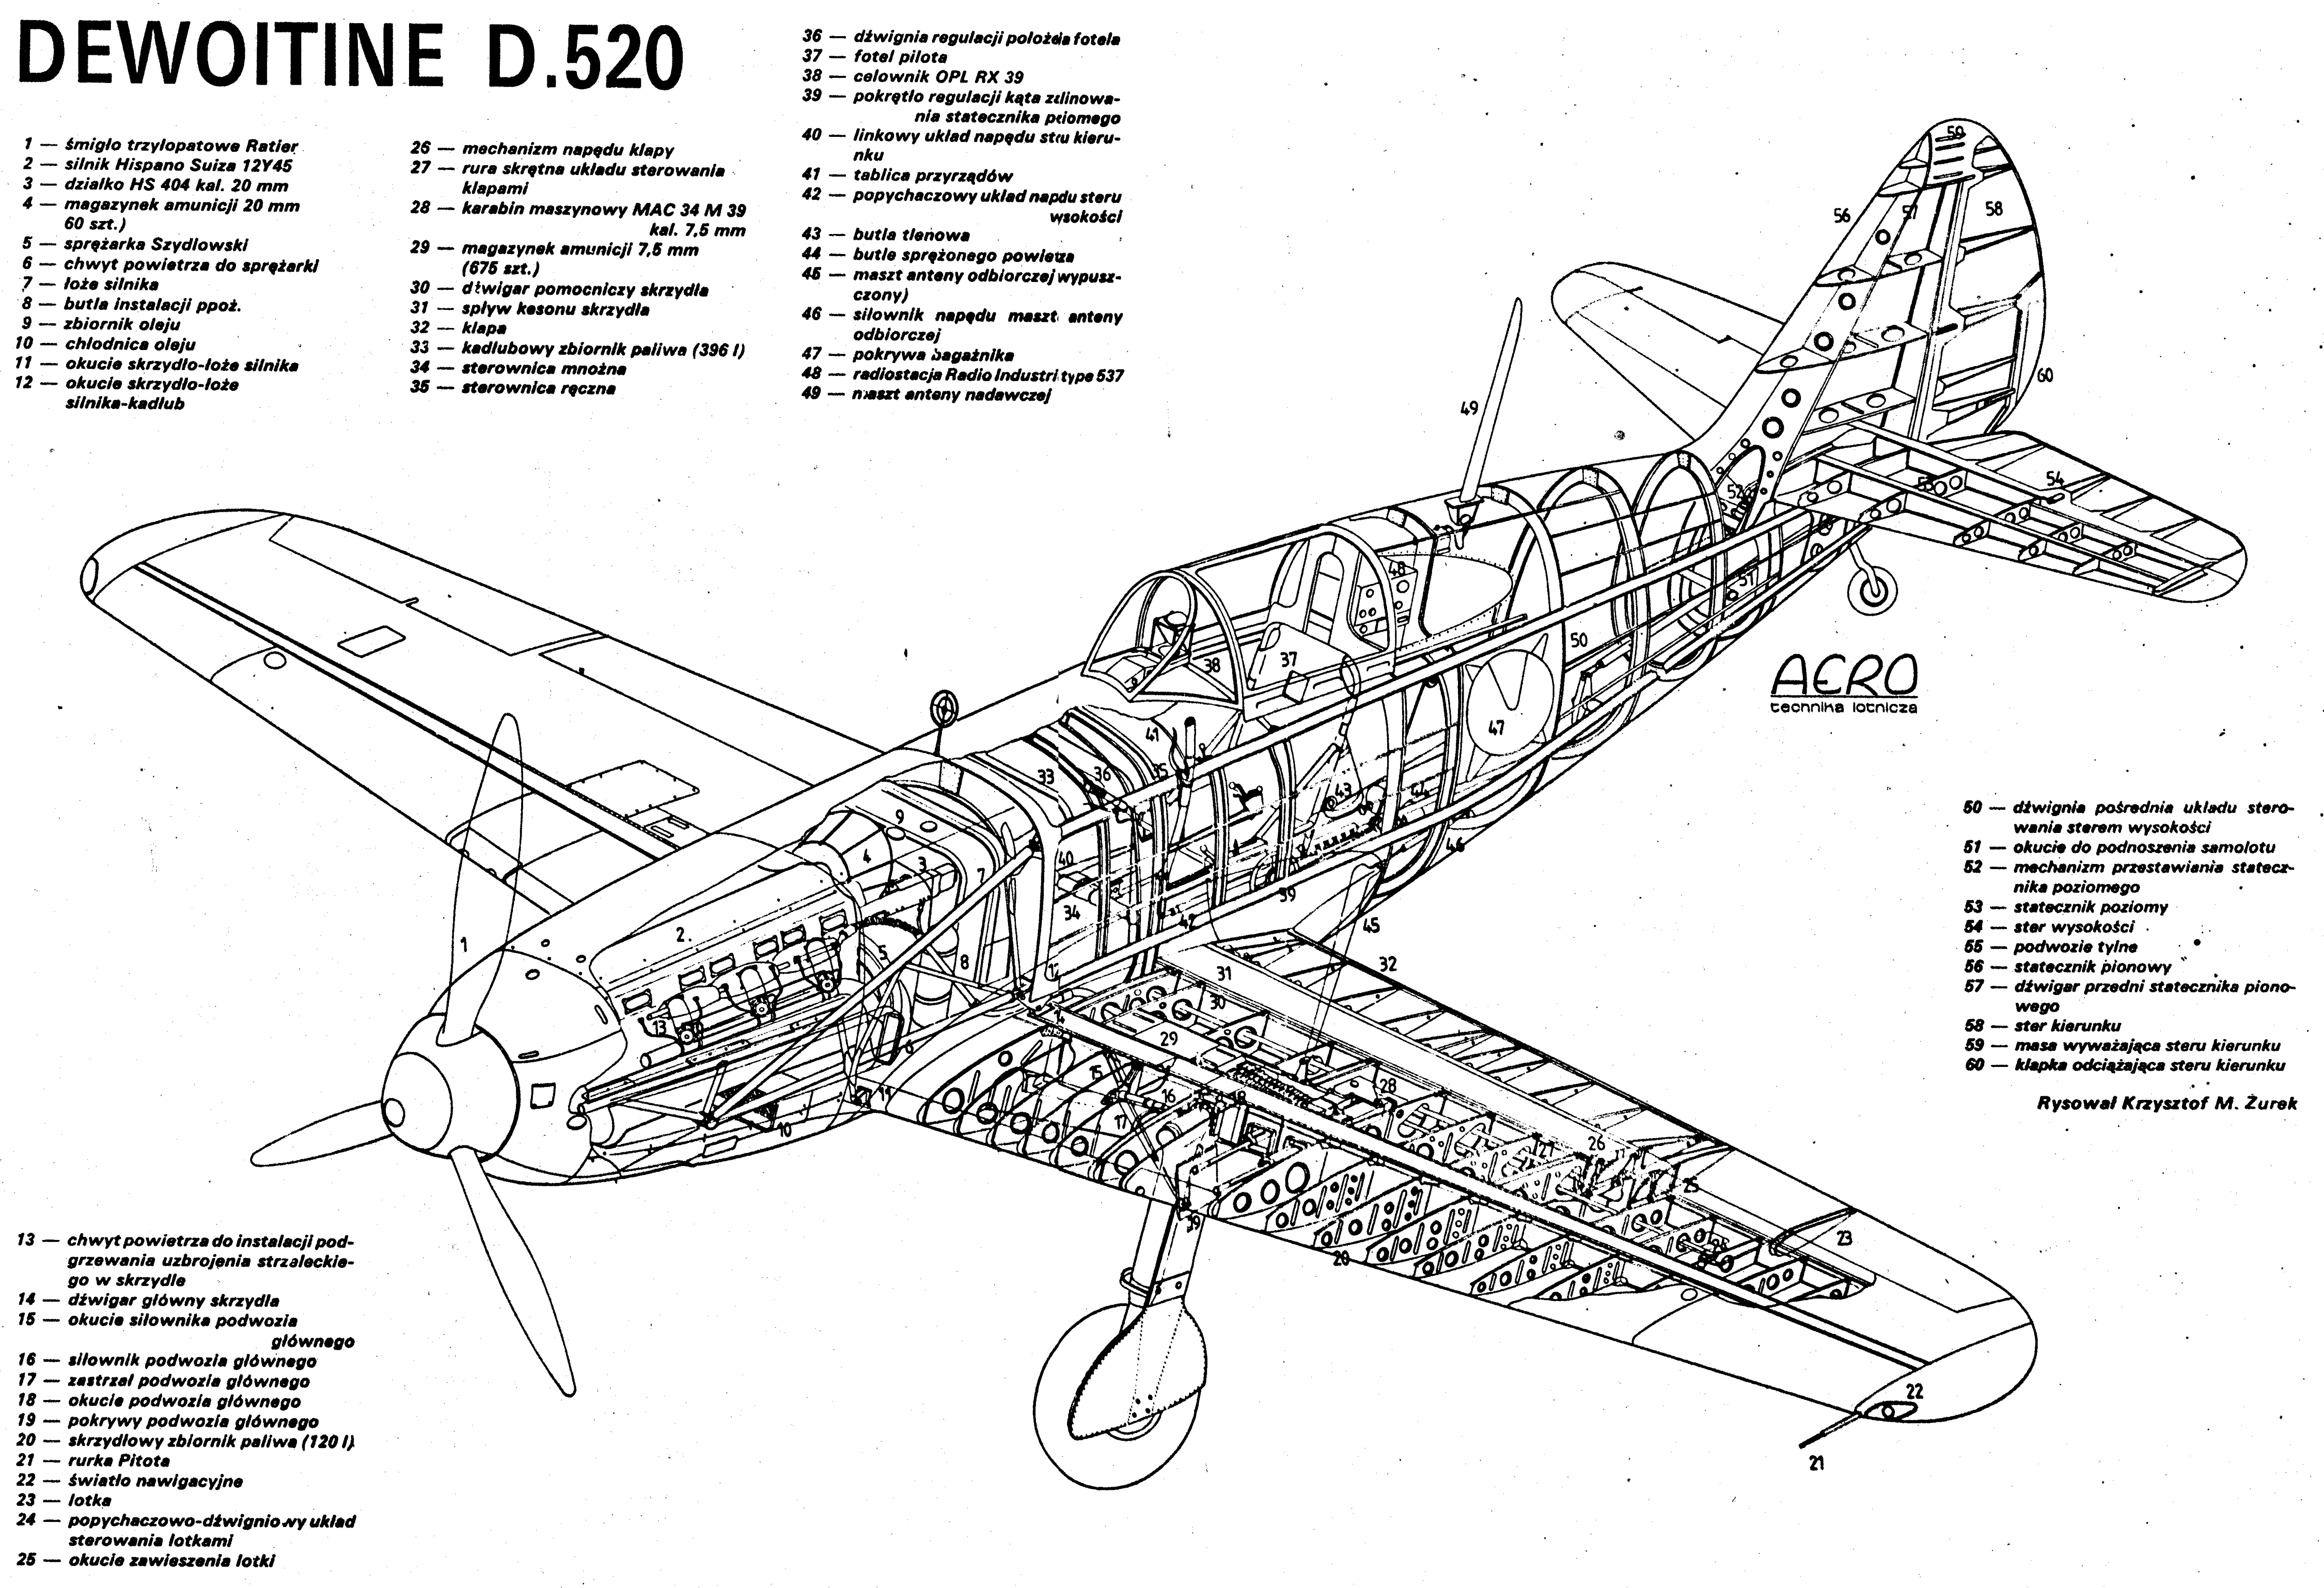 Боевые самолёты: французский истребитель dewoitine d.520